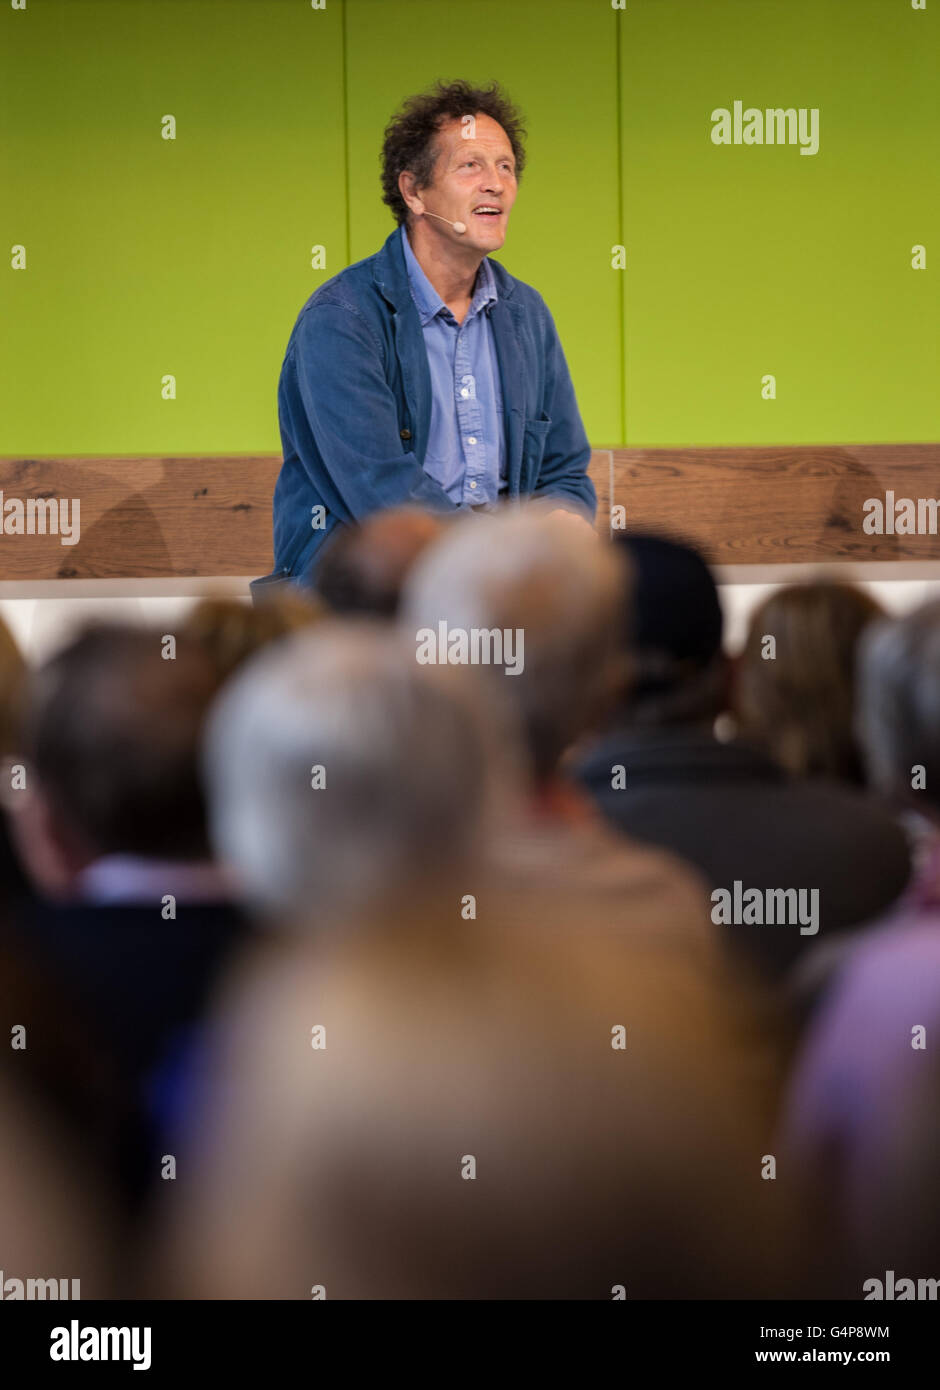 Birmingham, Reino Unido. 19 de junio de 2016. Monty Don en el mundo viven los jardineros etapa hablando a las multitudes de crédito: Steven roe/Alamy Live News Foto de stock